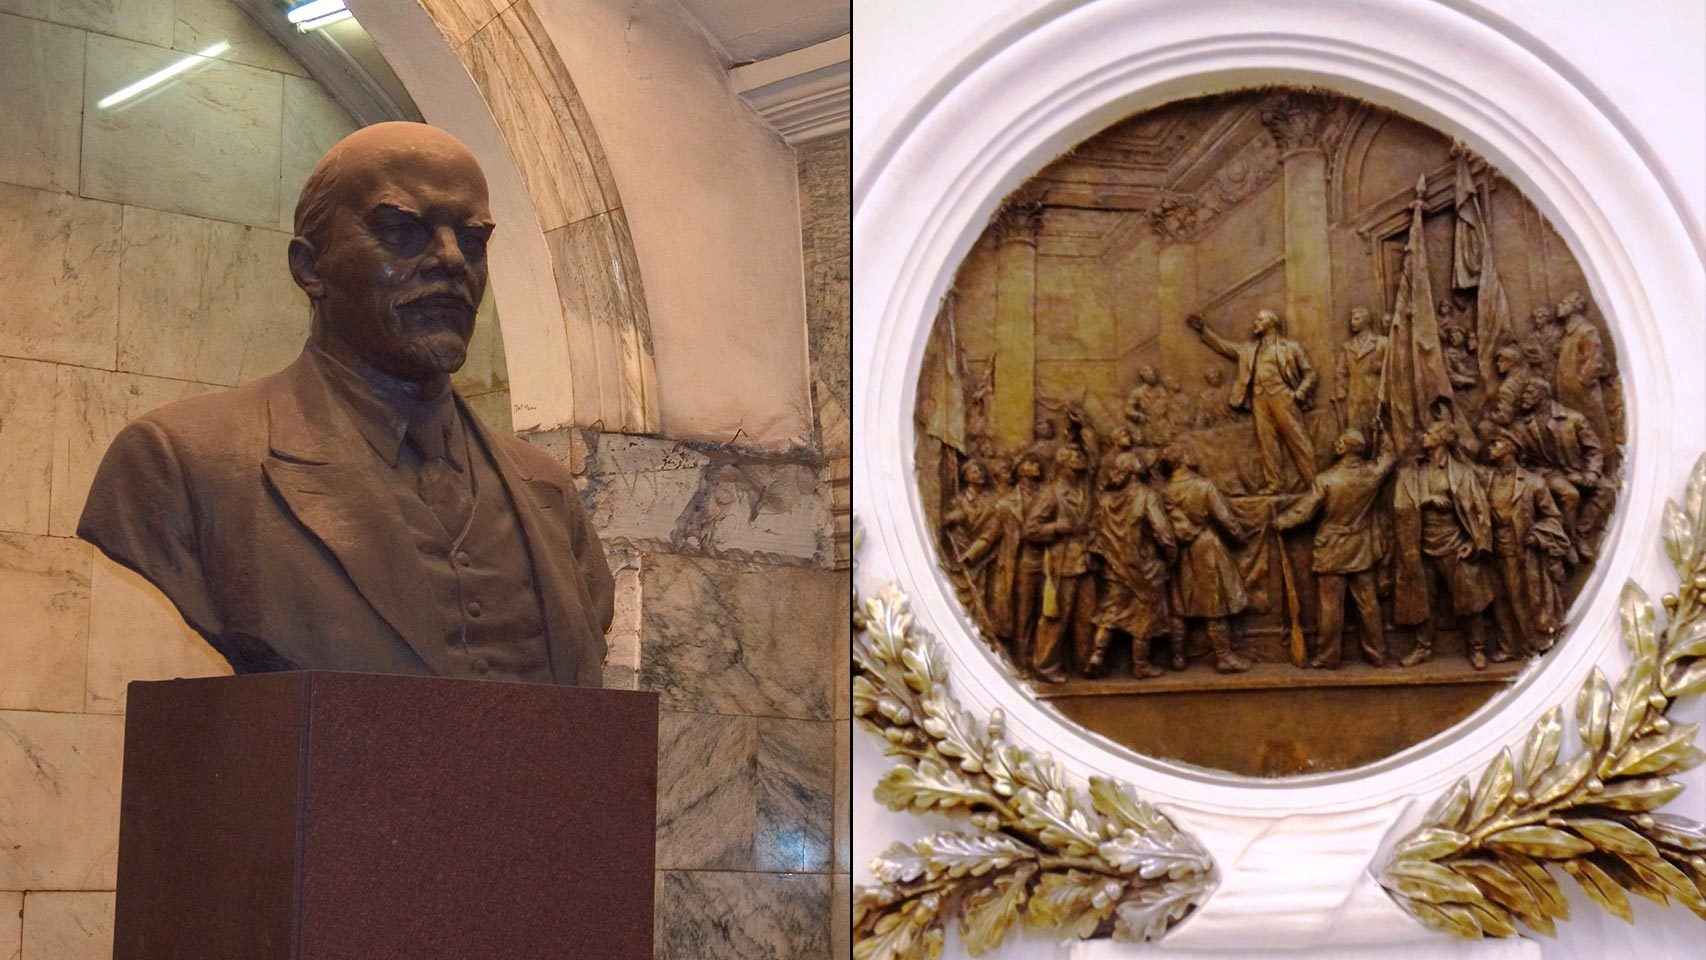 Un busto de Lenin y un bajorrelieve de uno de sus discursos en dos estaciones del metro de San Petersburgo.